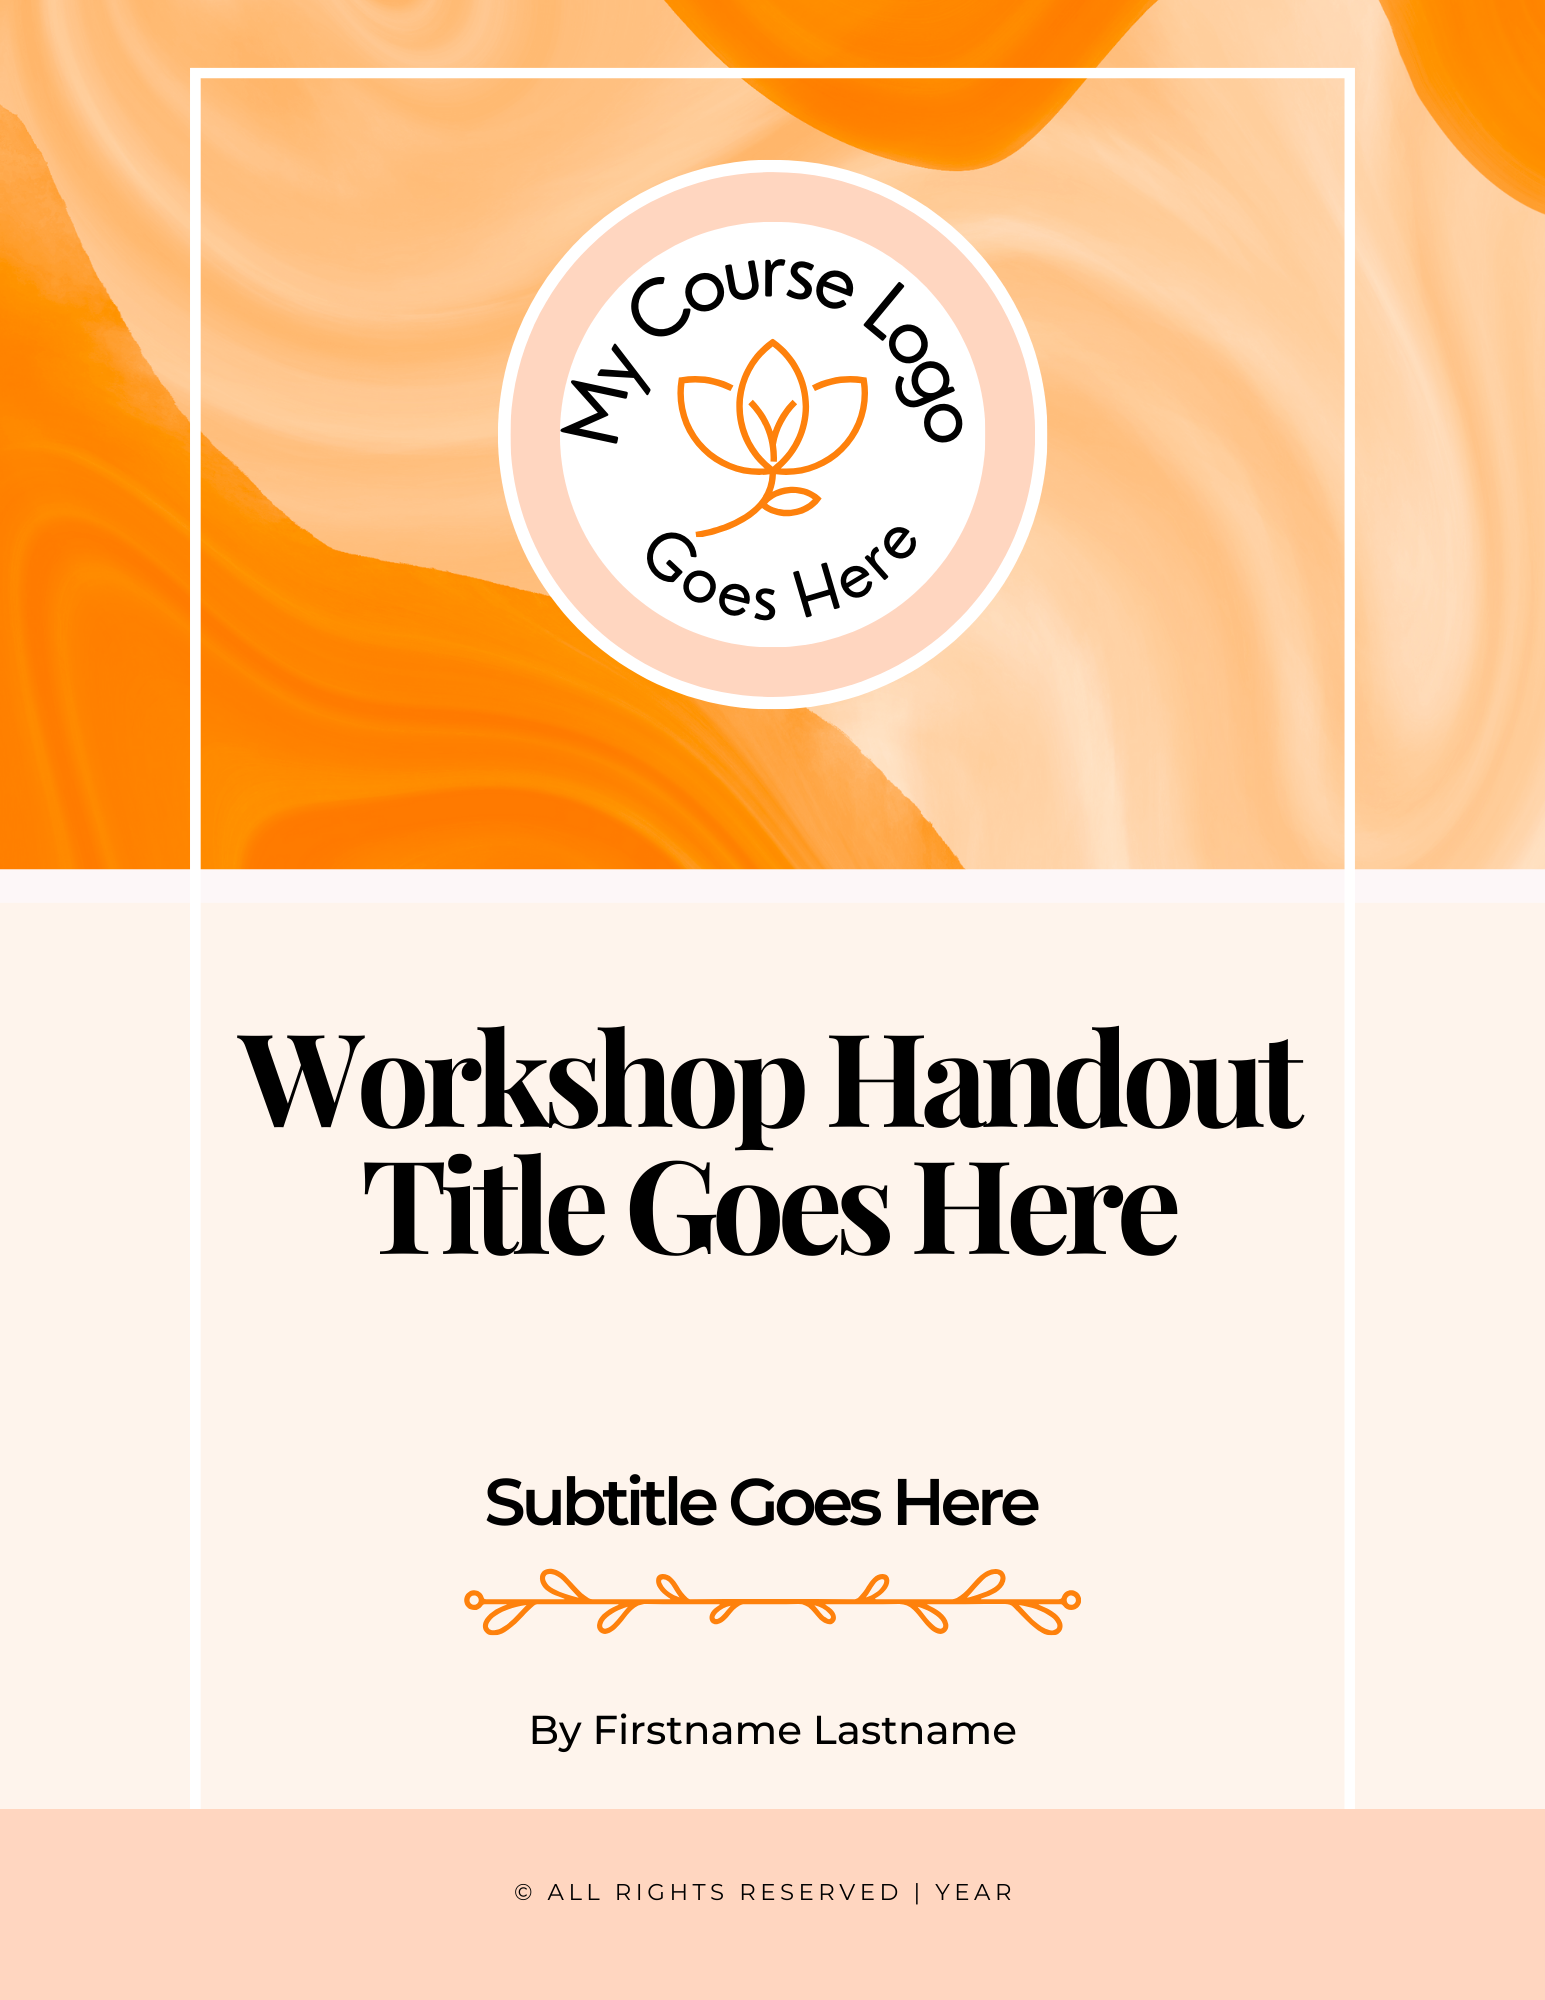 Complete Sweet Workshop Kit: Orange Zest